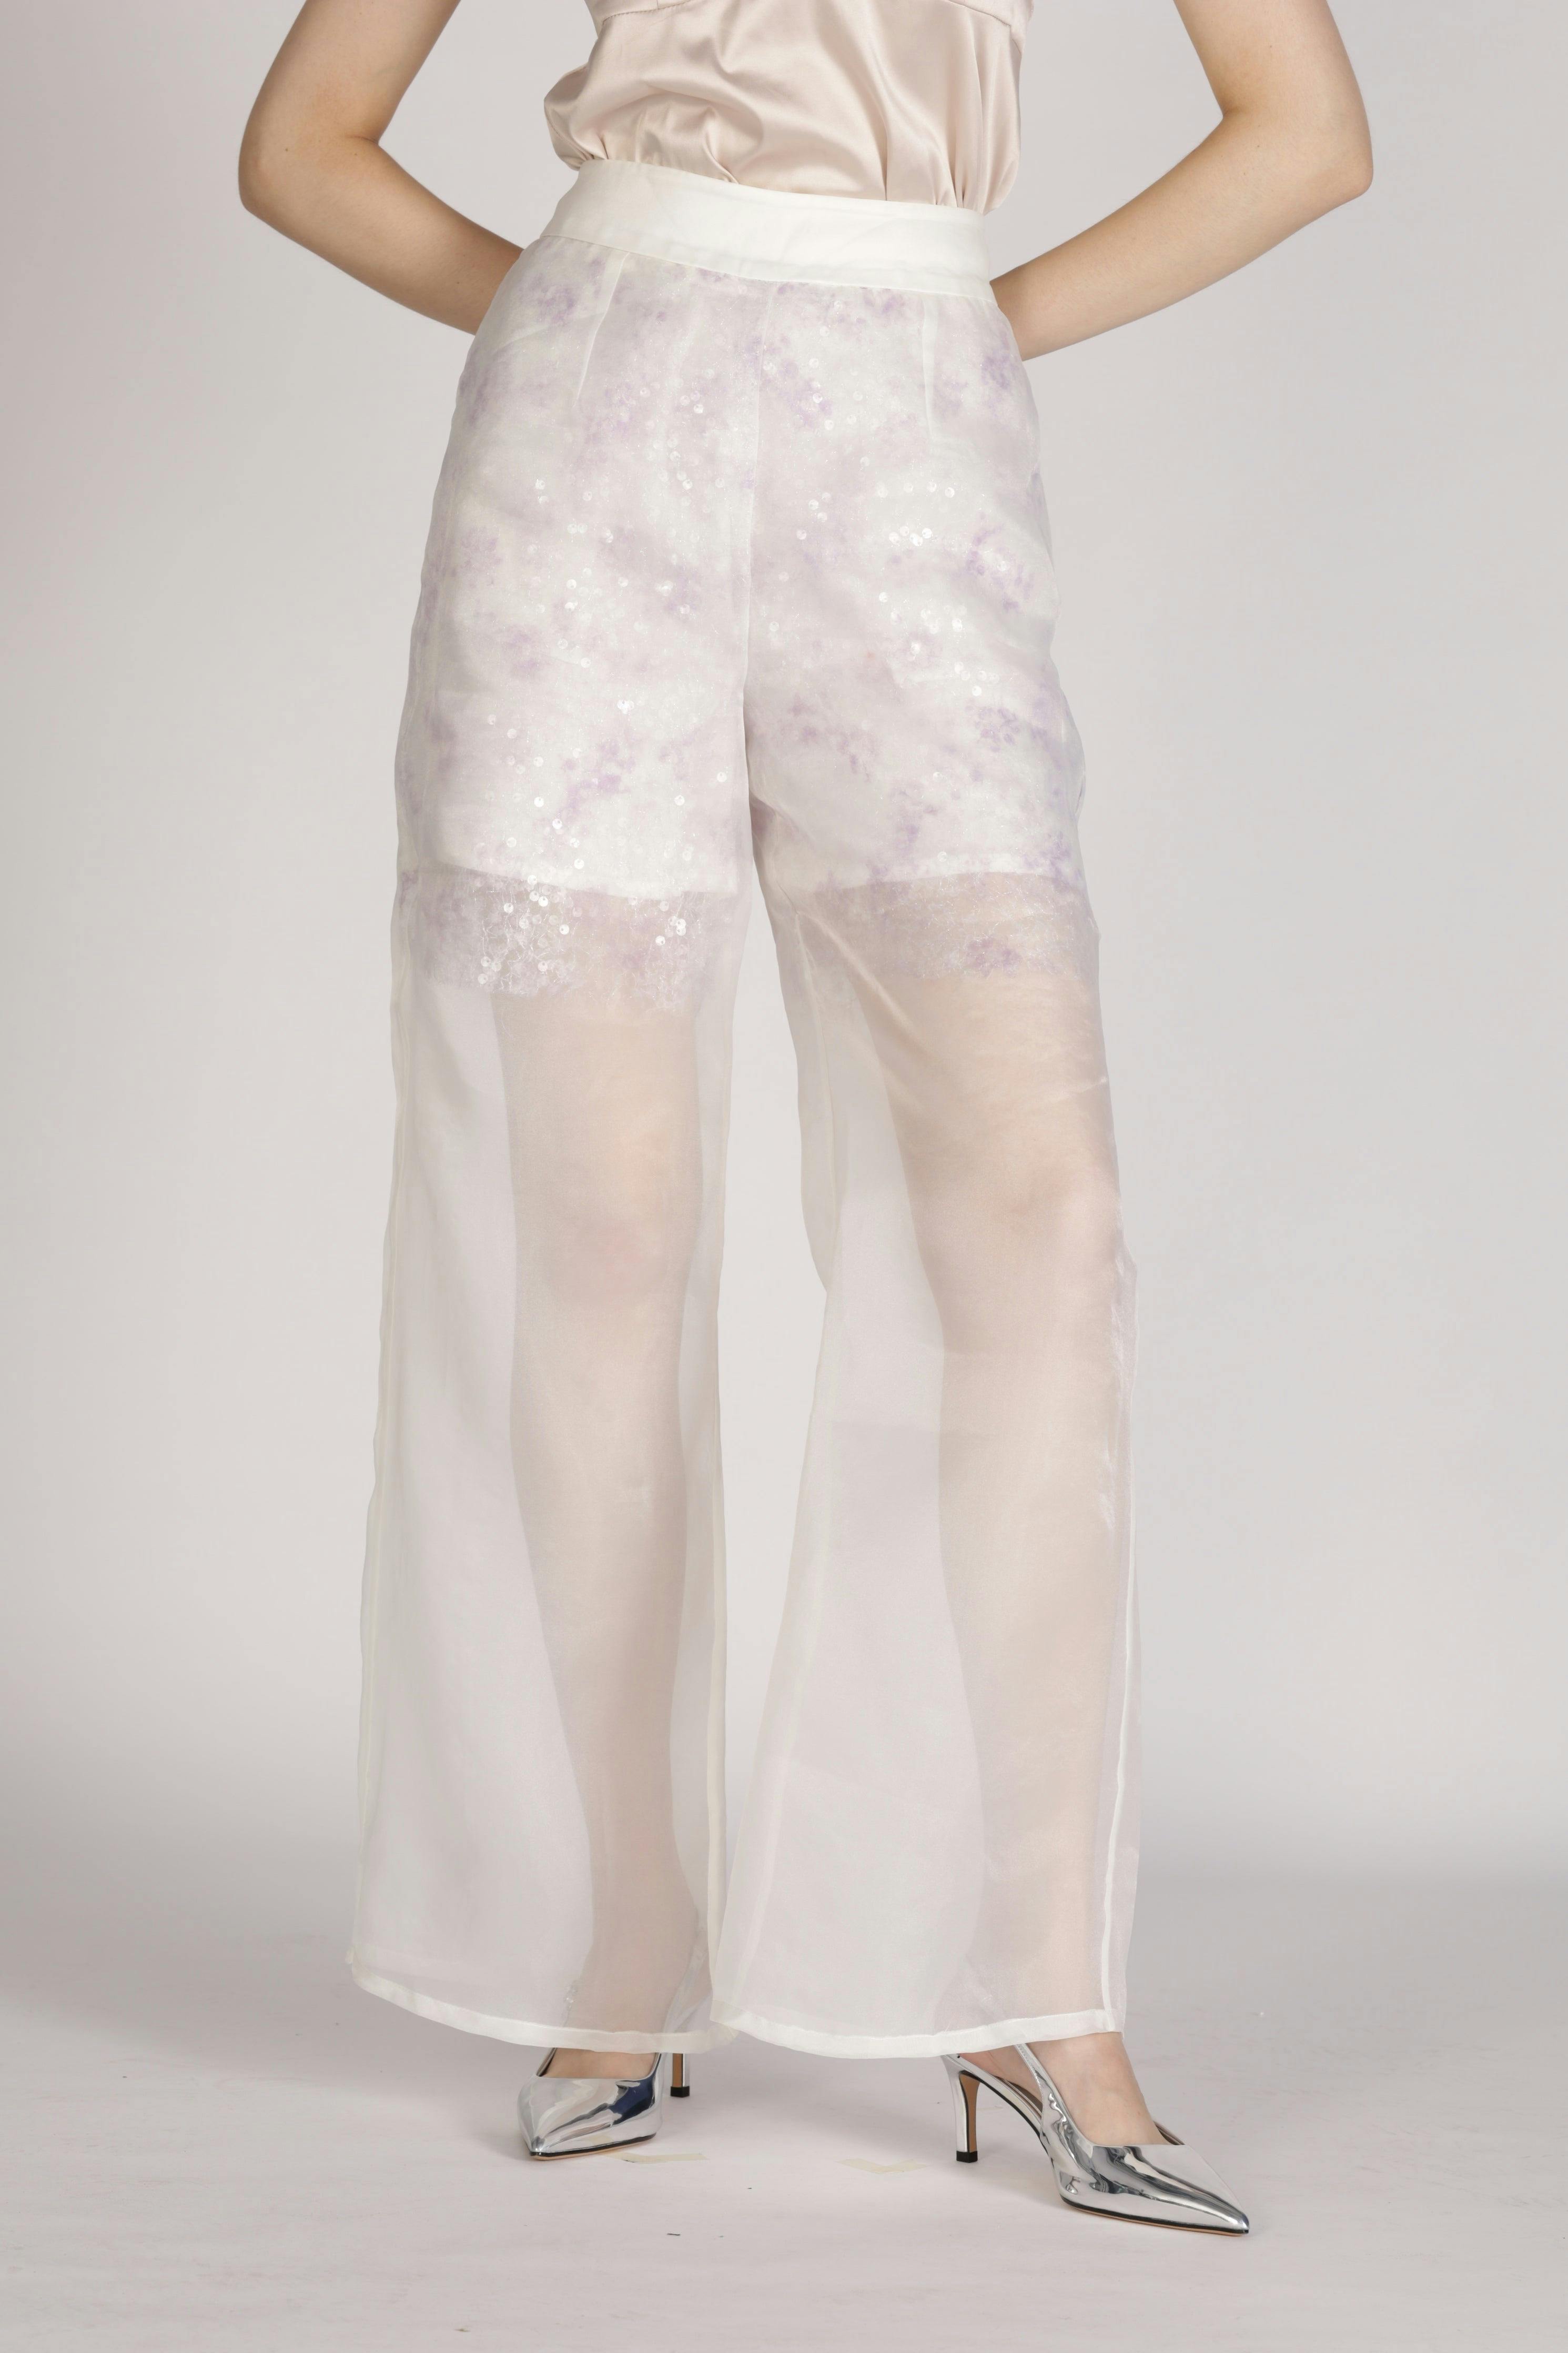 Sequin Pant, a product by SZMAN